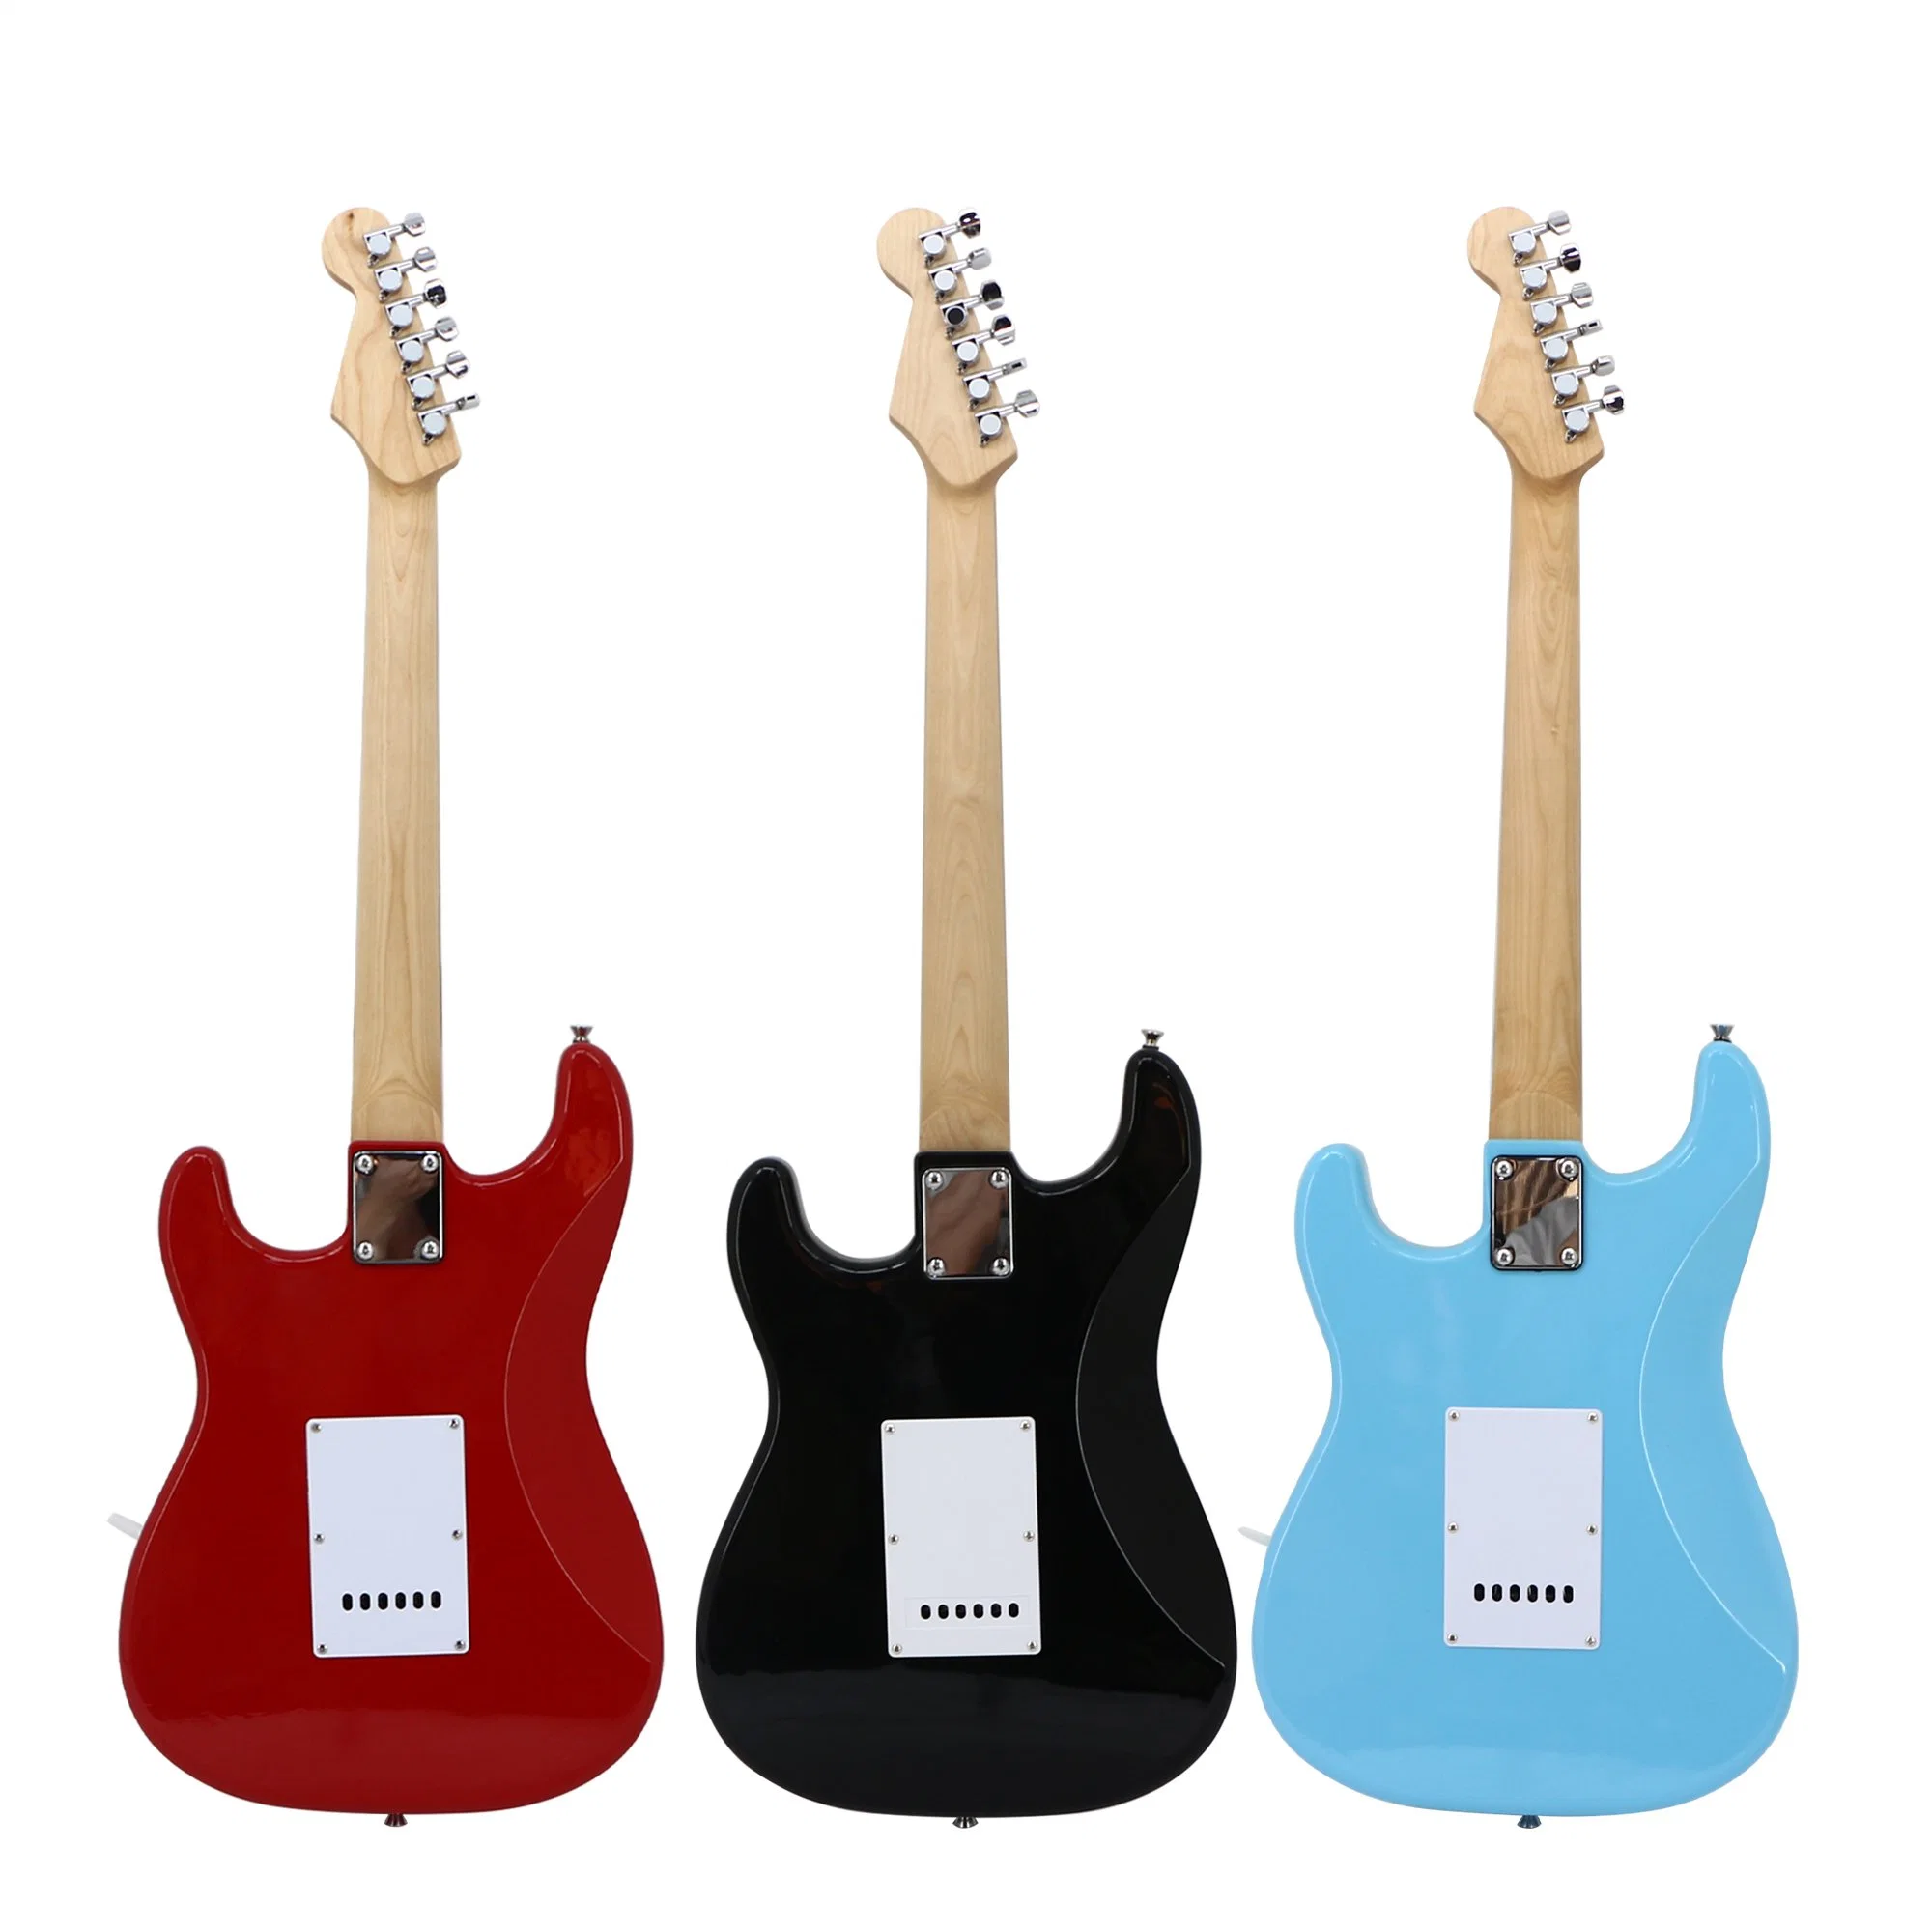 Original Factory Customs Martin Guitar Electronic Jazz Guitar Kit String Musical Instruments Colorful Carbon Fiber St Bass Guitar Electric Guitar